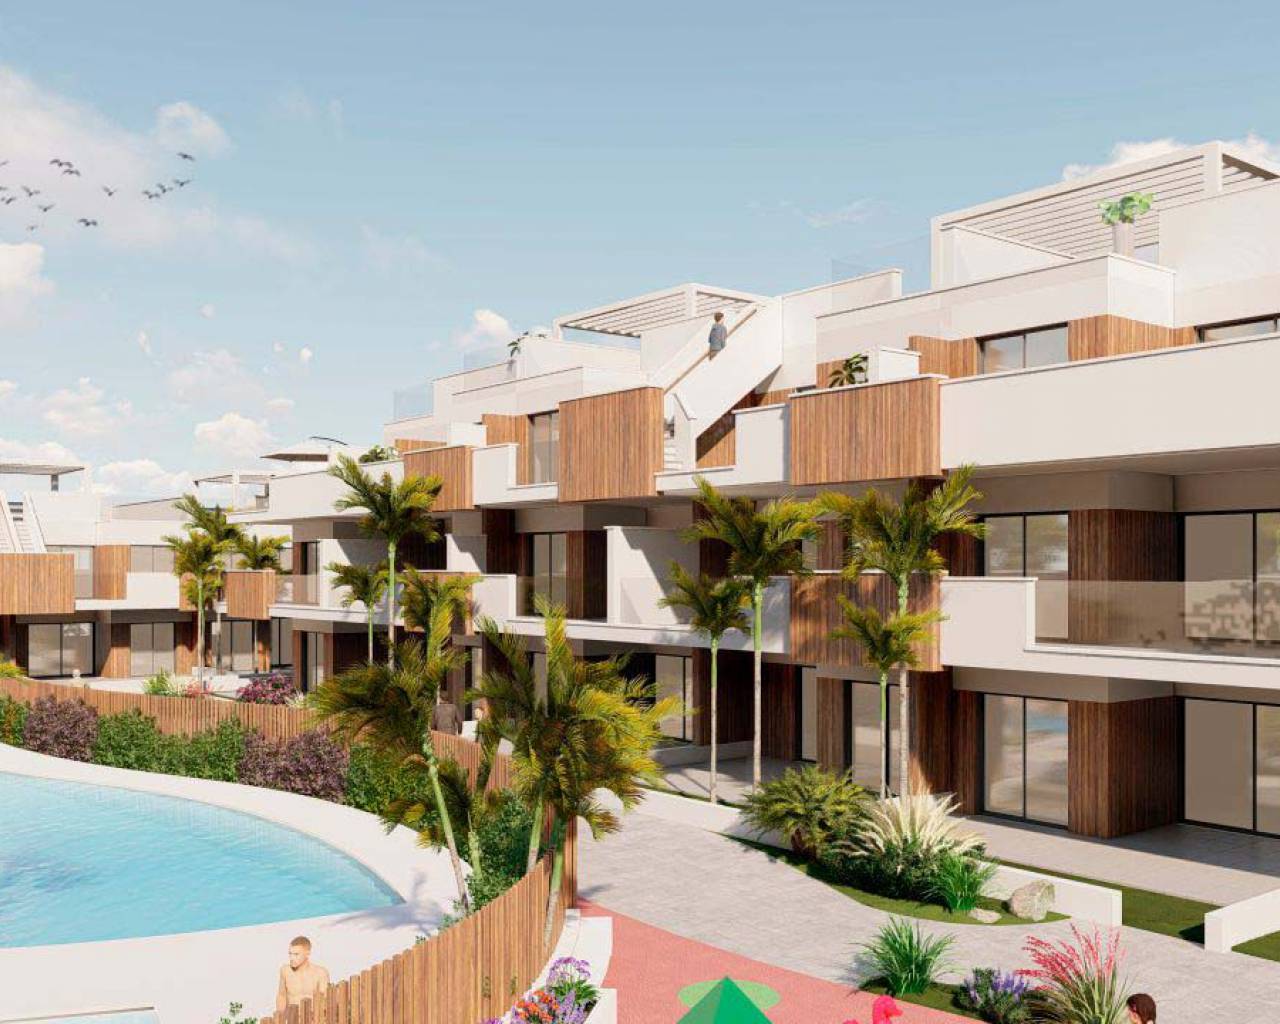 Modern groundfloor apartment with pool for sale in Pilar de la Horadada, Alicante, Spain